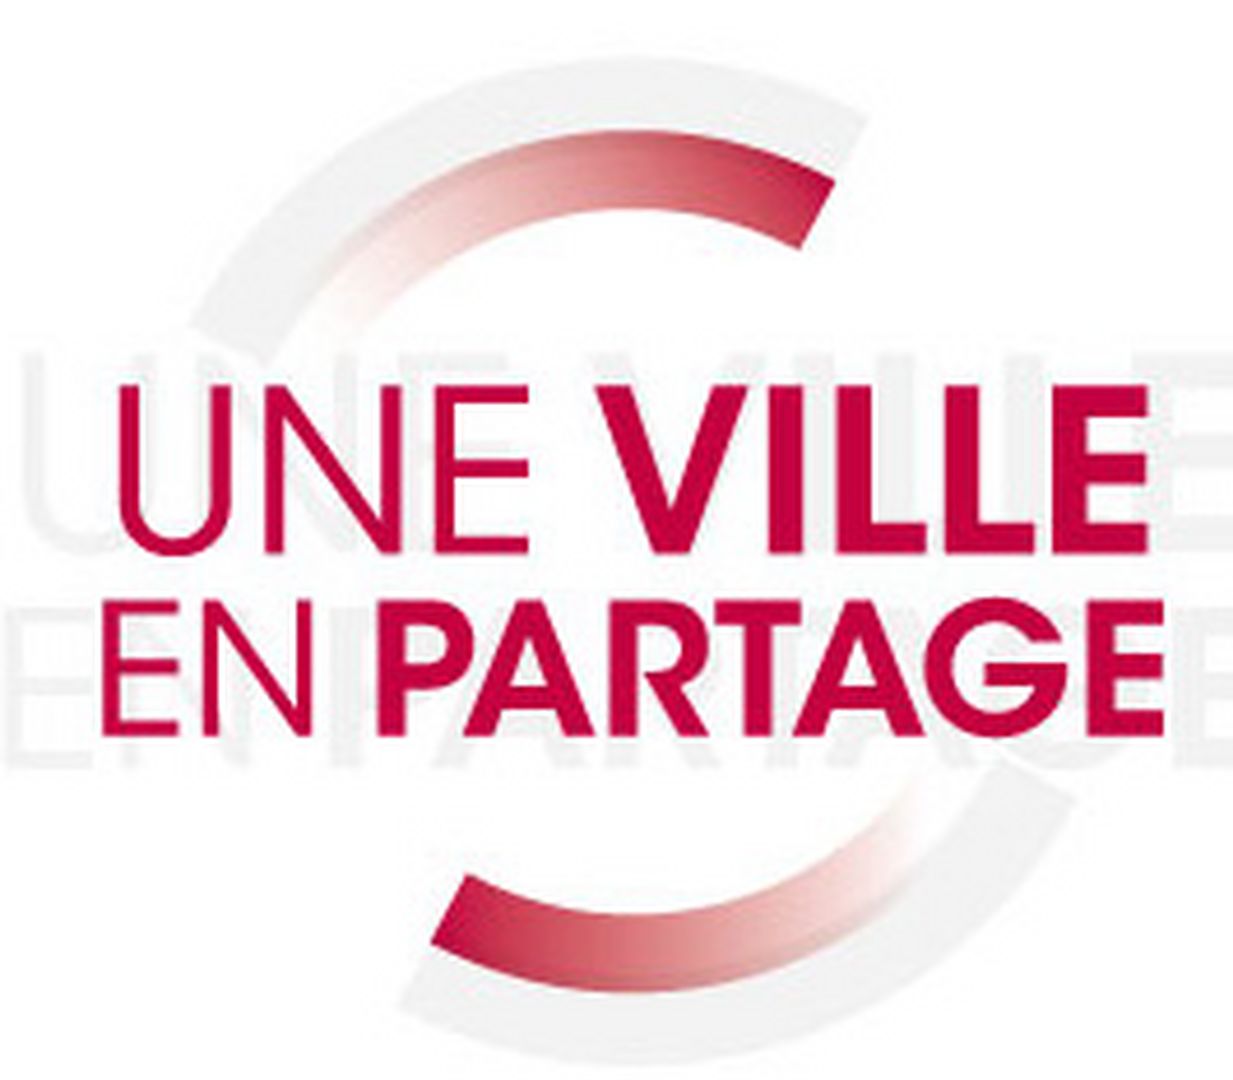 Image de l'Office du Cinéma Educateur de la ville de St-Etienne